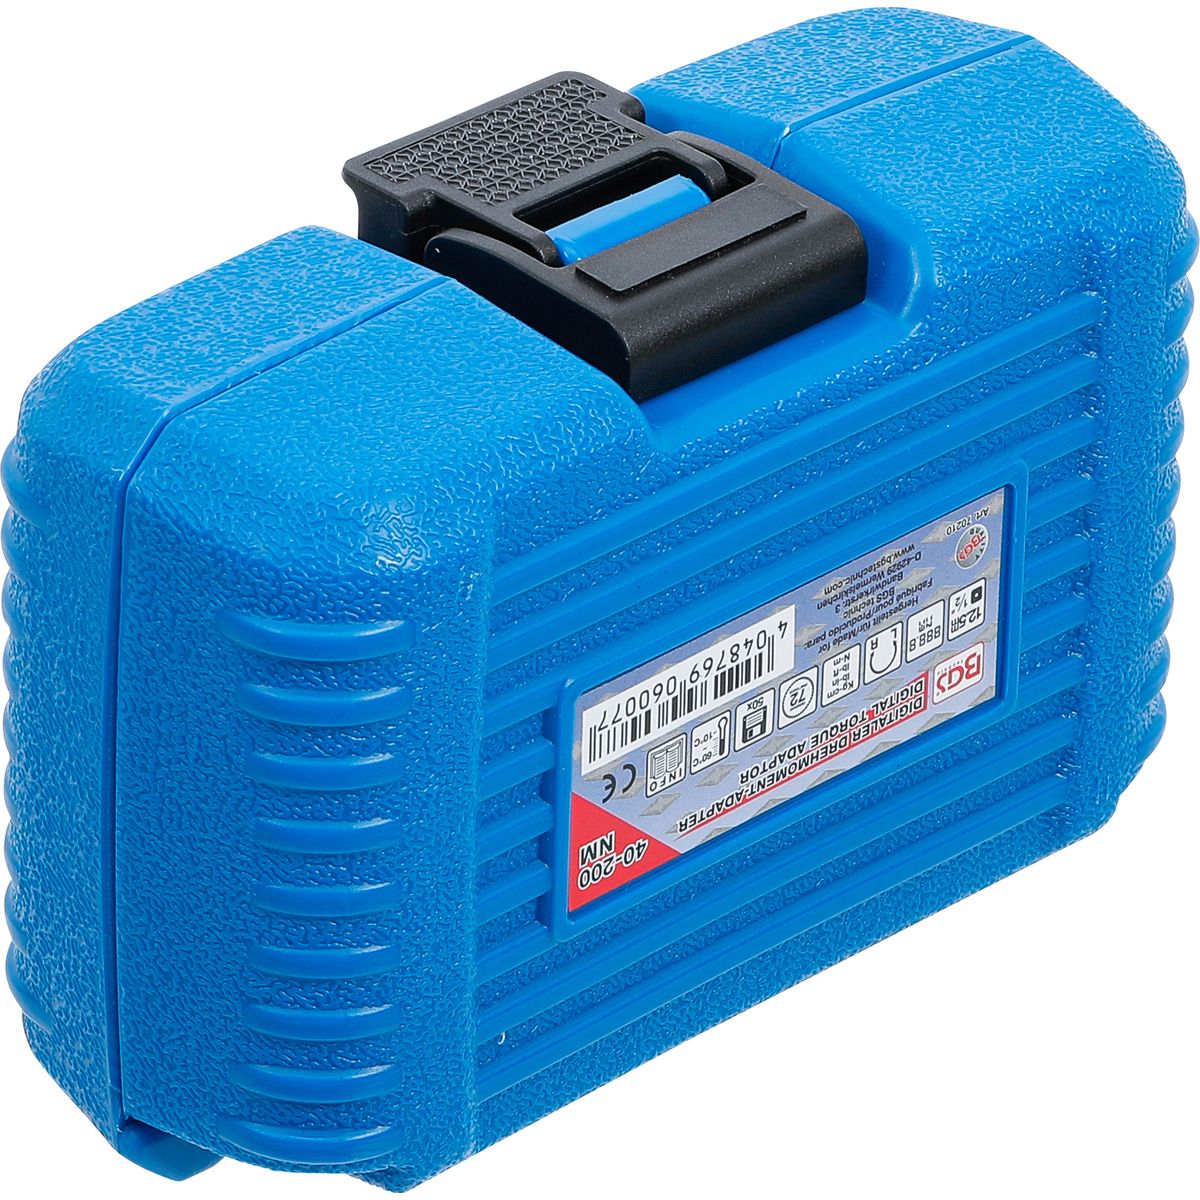 Digitaler Drehmoment-Adapter | 12,5 mm (1/2") | 40 - 200 Nm